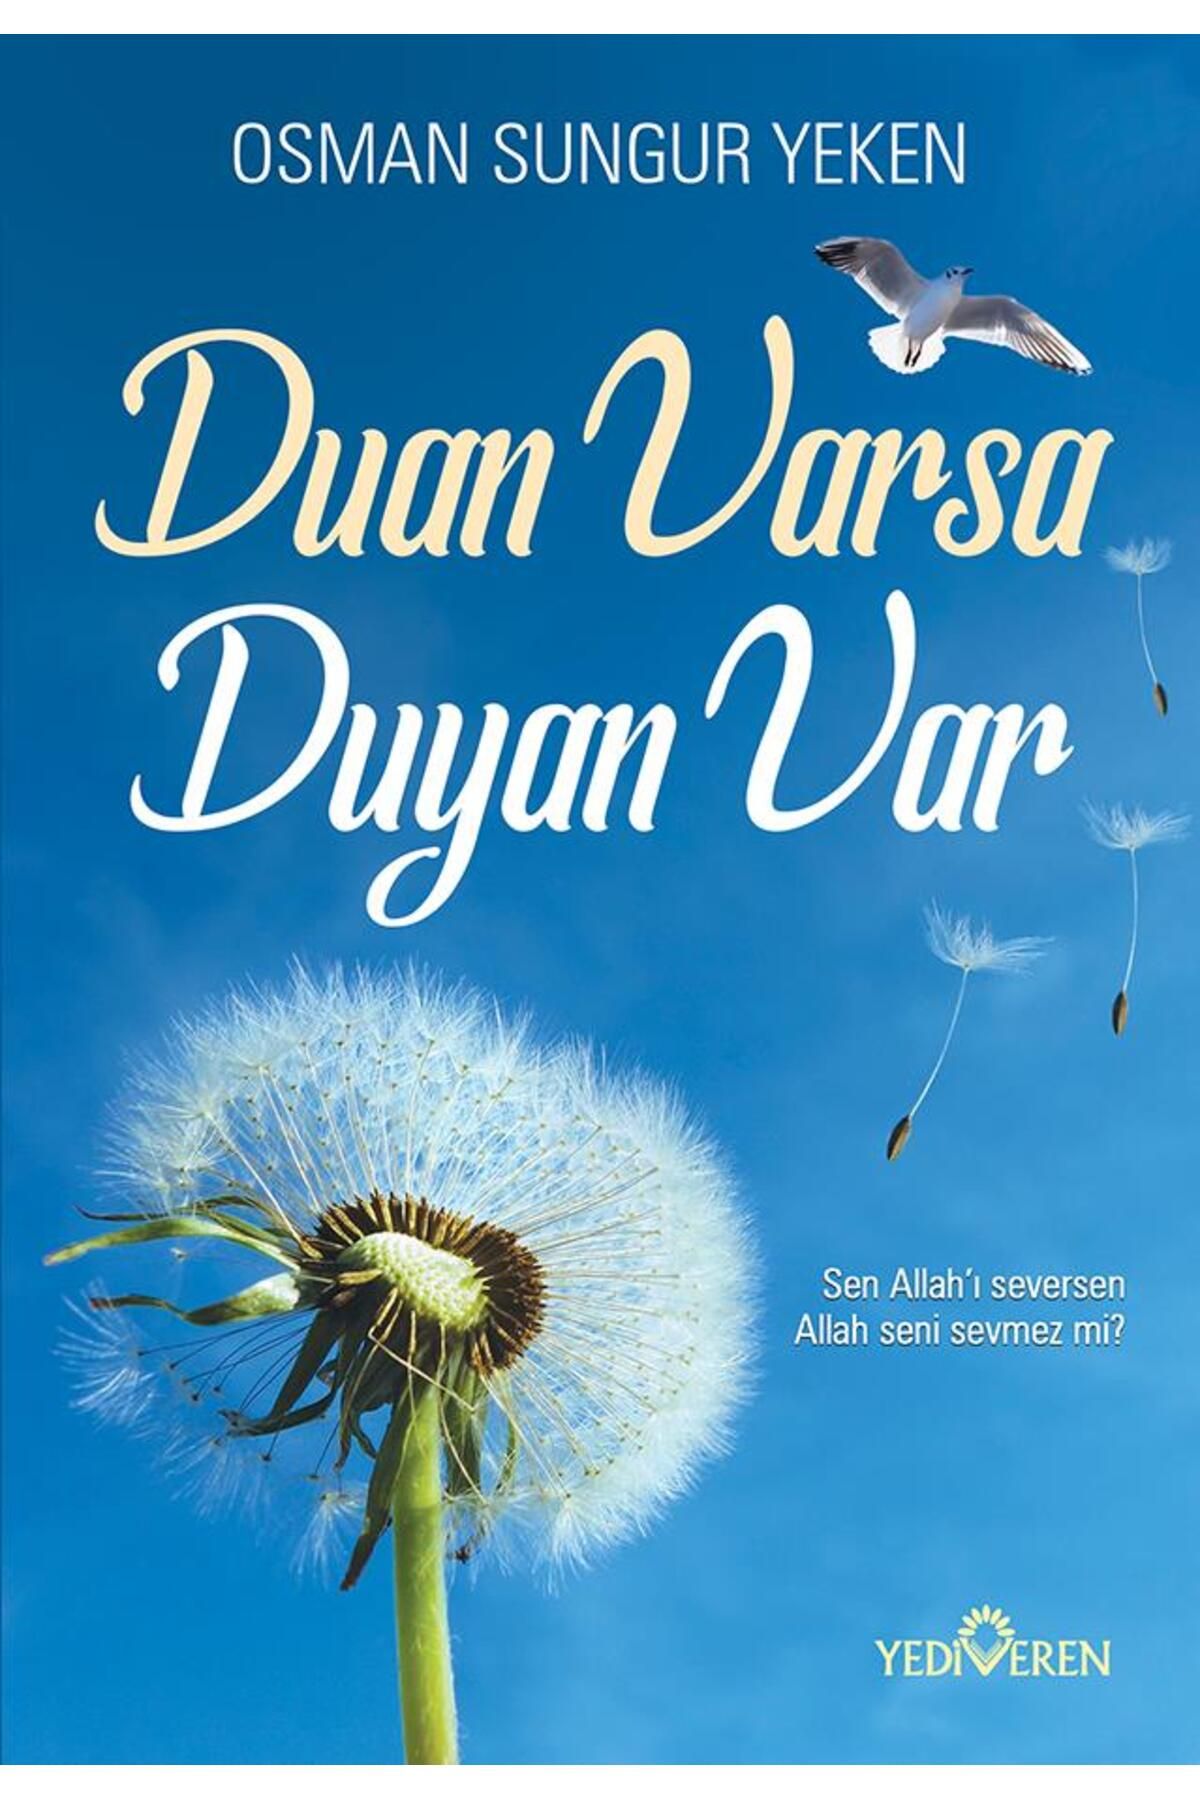 Yediveren Yayınları Duan Varsa Duyan Var/Osman Sungur Yeken/Yediveren